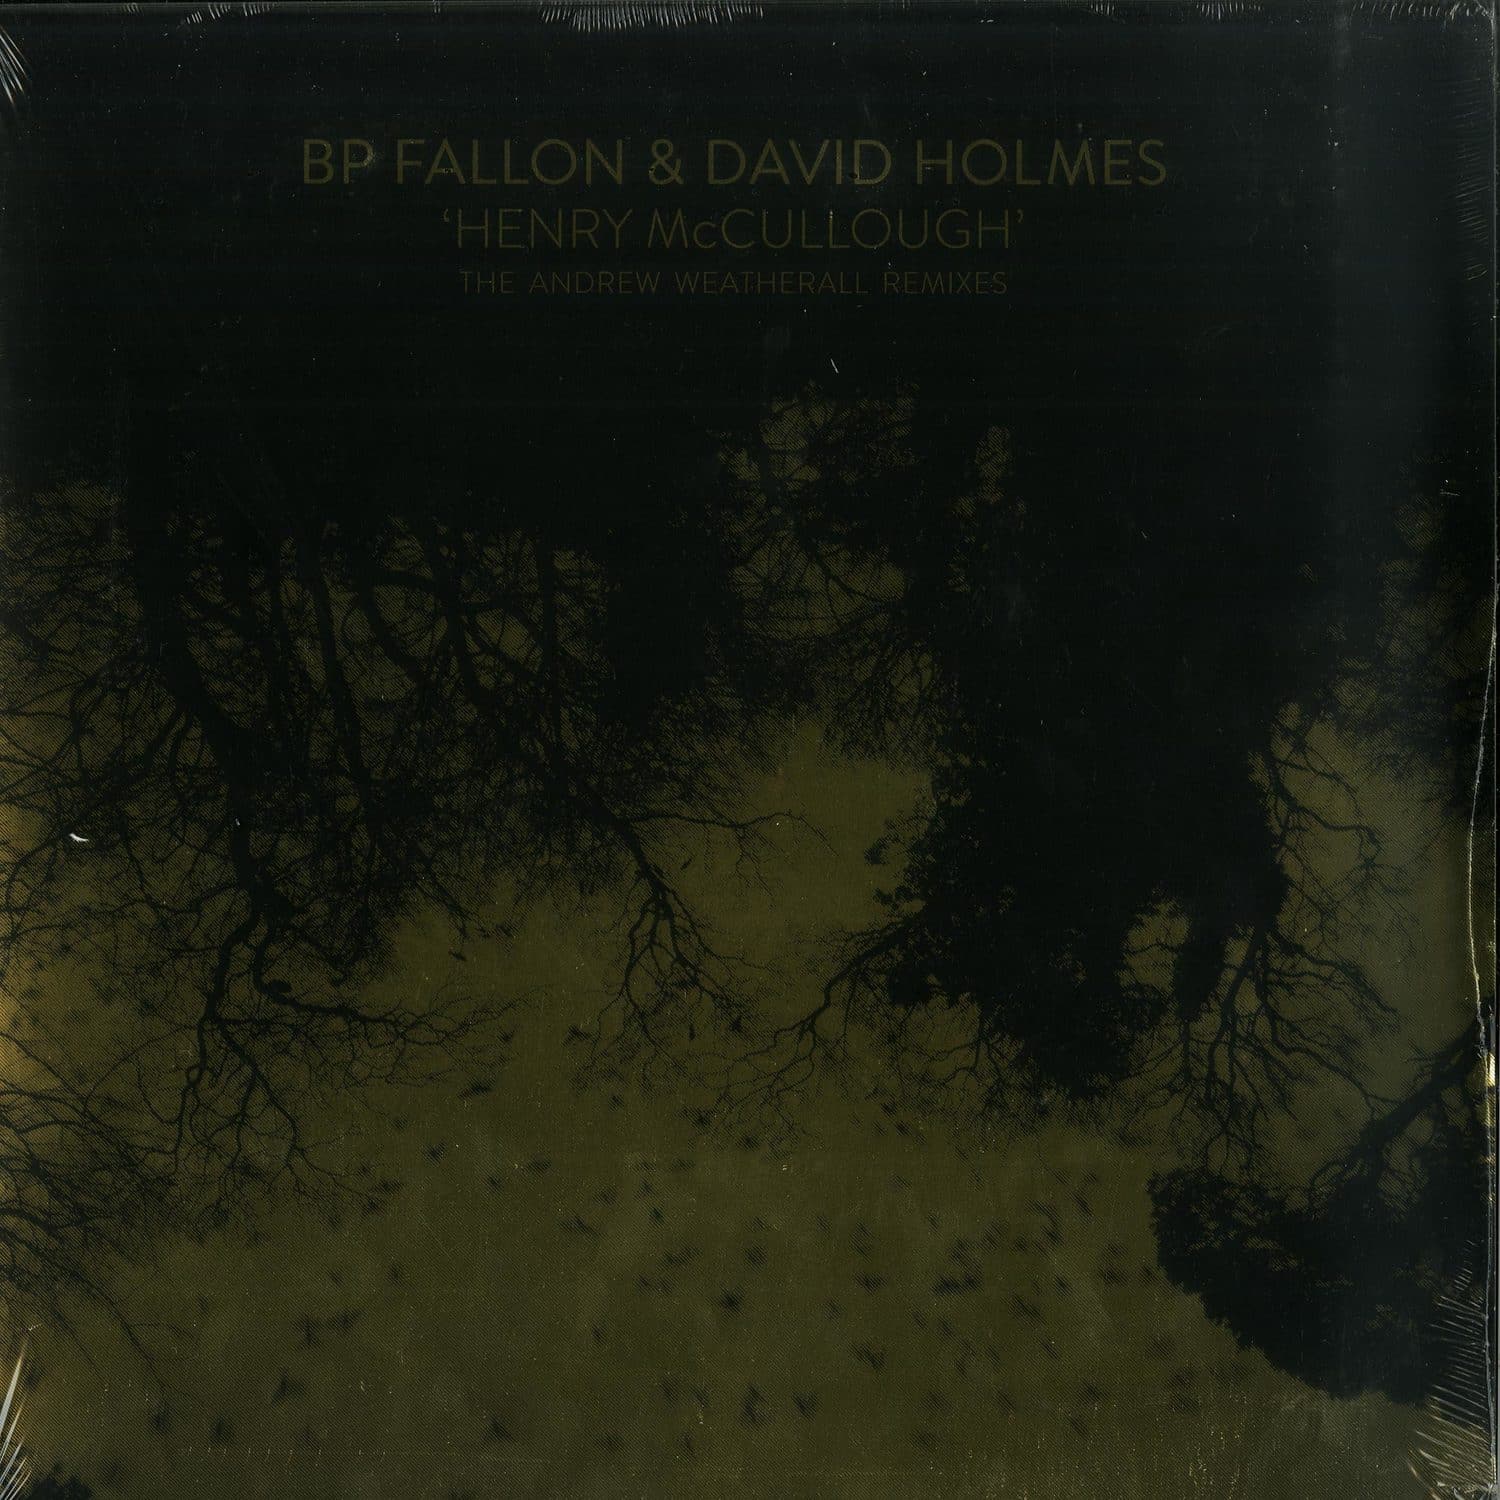 BP Fallon & David Holmes - HENRY MCCULLOUGH 